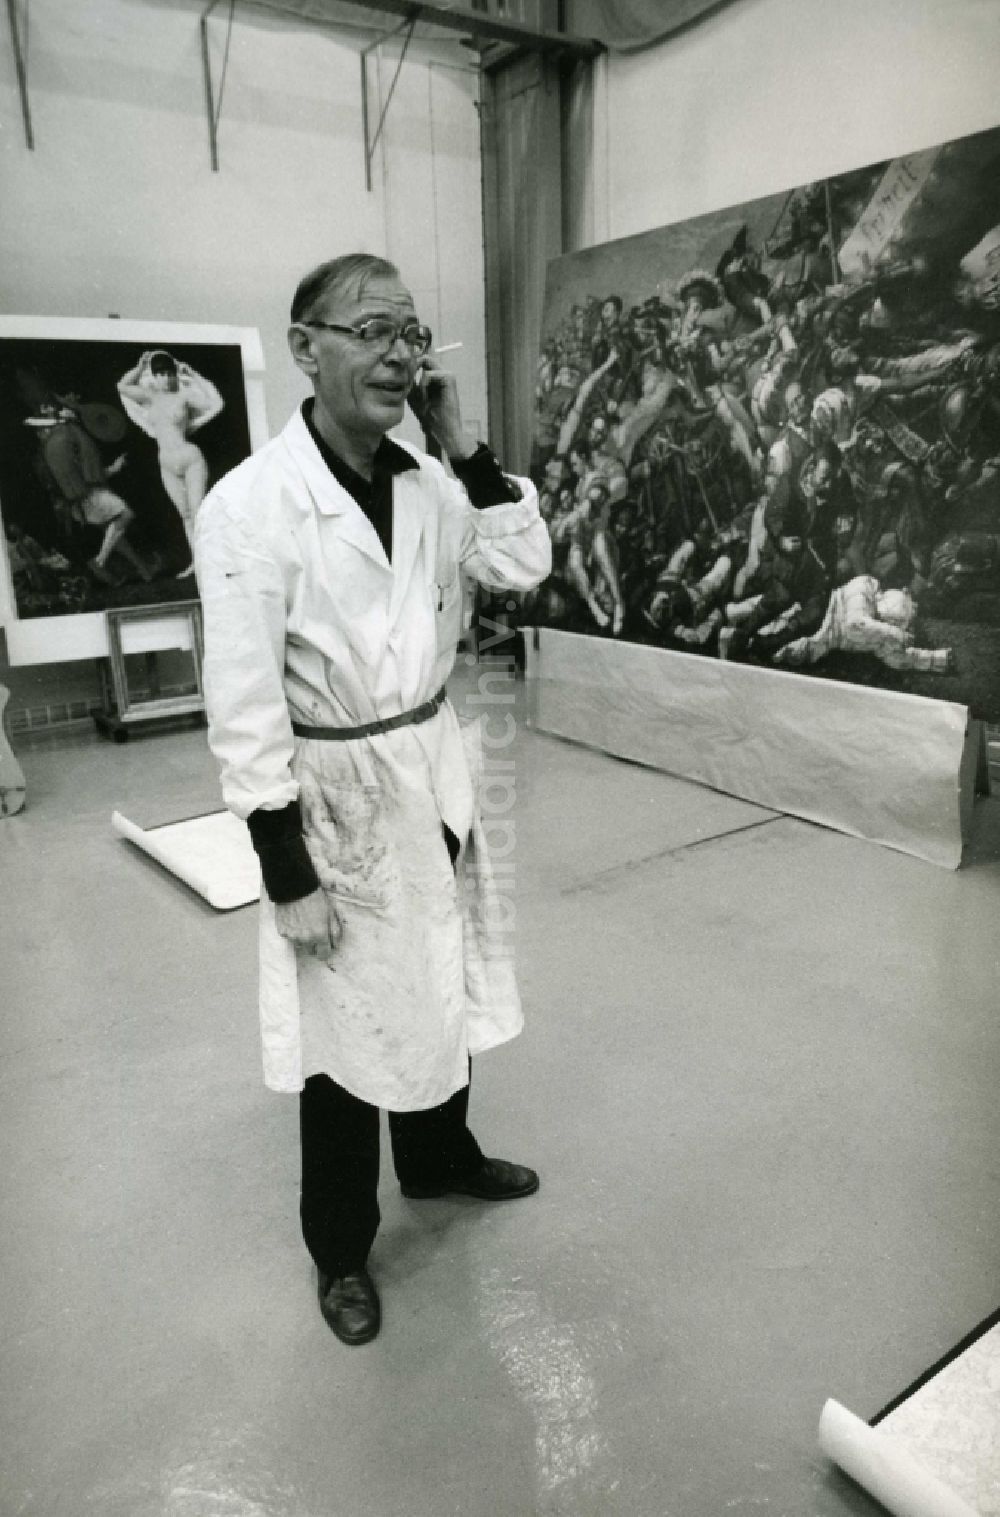 DDR-Fotoarchiv: Leipzig - Der Maler, Werner Tübke (1929 - 2004), in seinem Atelier in Leipzig im heutigen Bundesland Sachsen